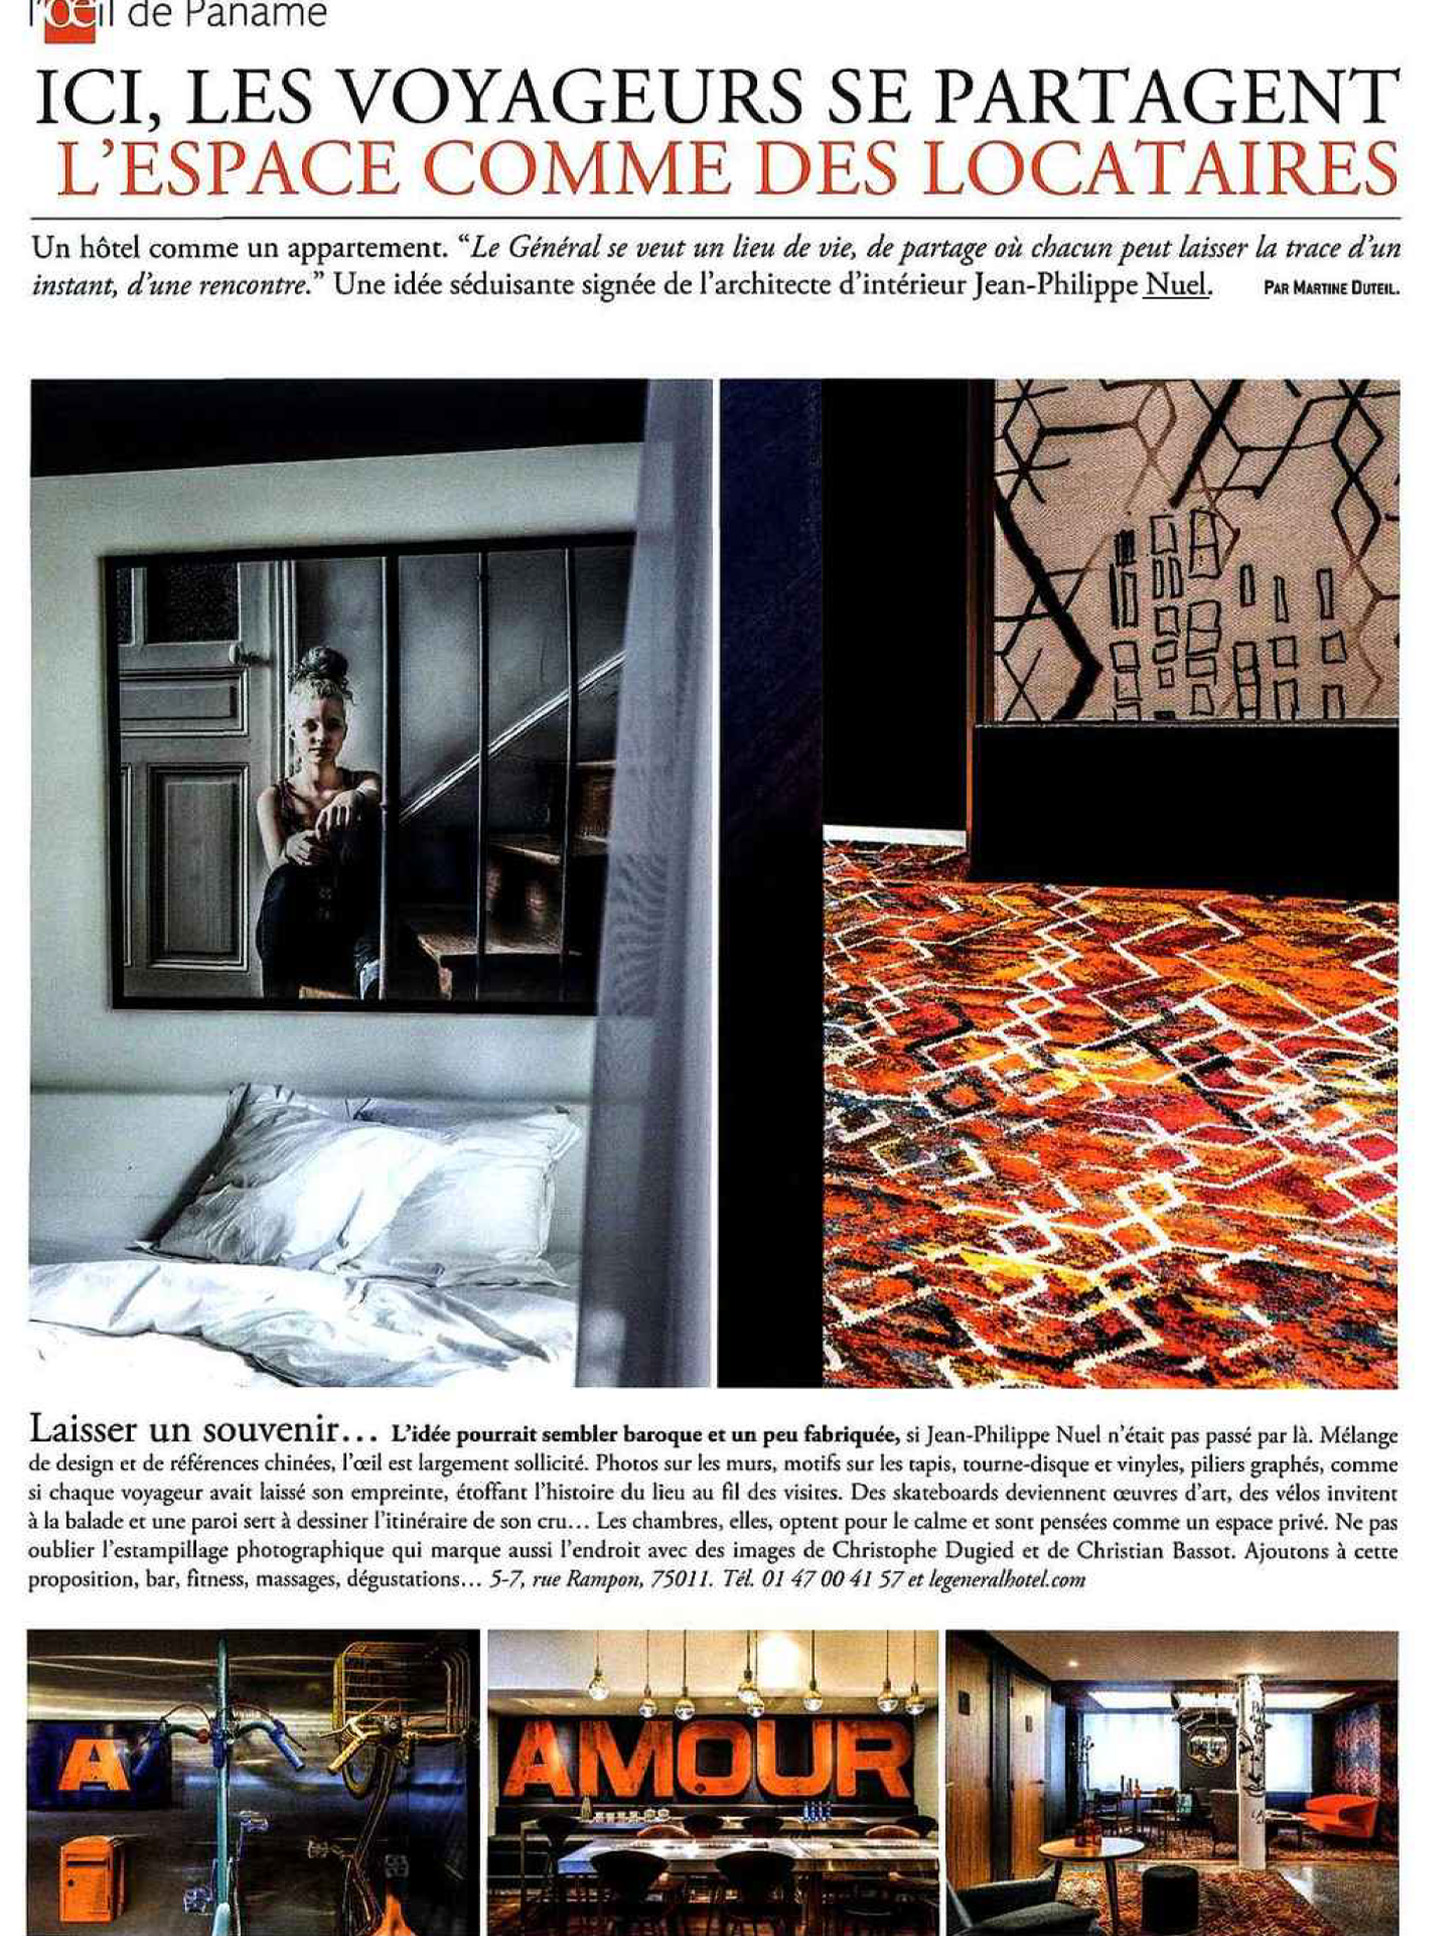 Article on the hotel Le Général in Paris by the interior design studio jean-philippe nuel, in the magazine vivre côté paris